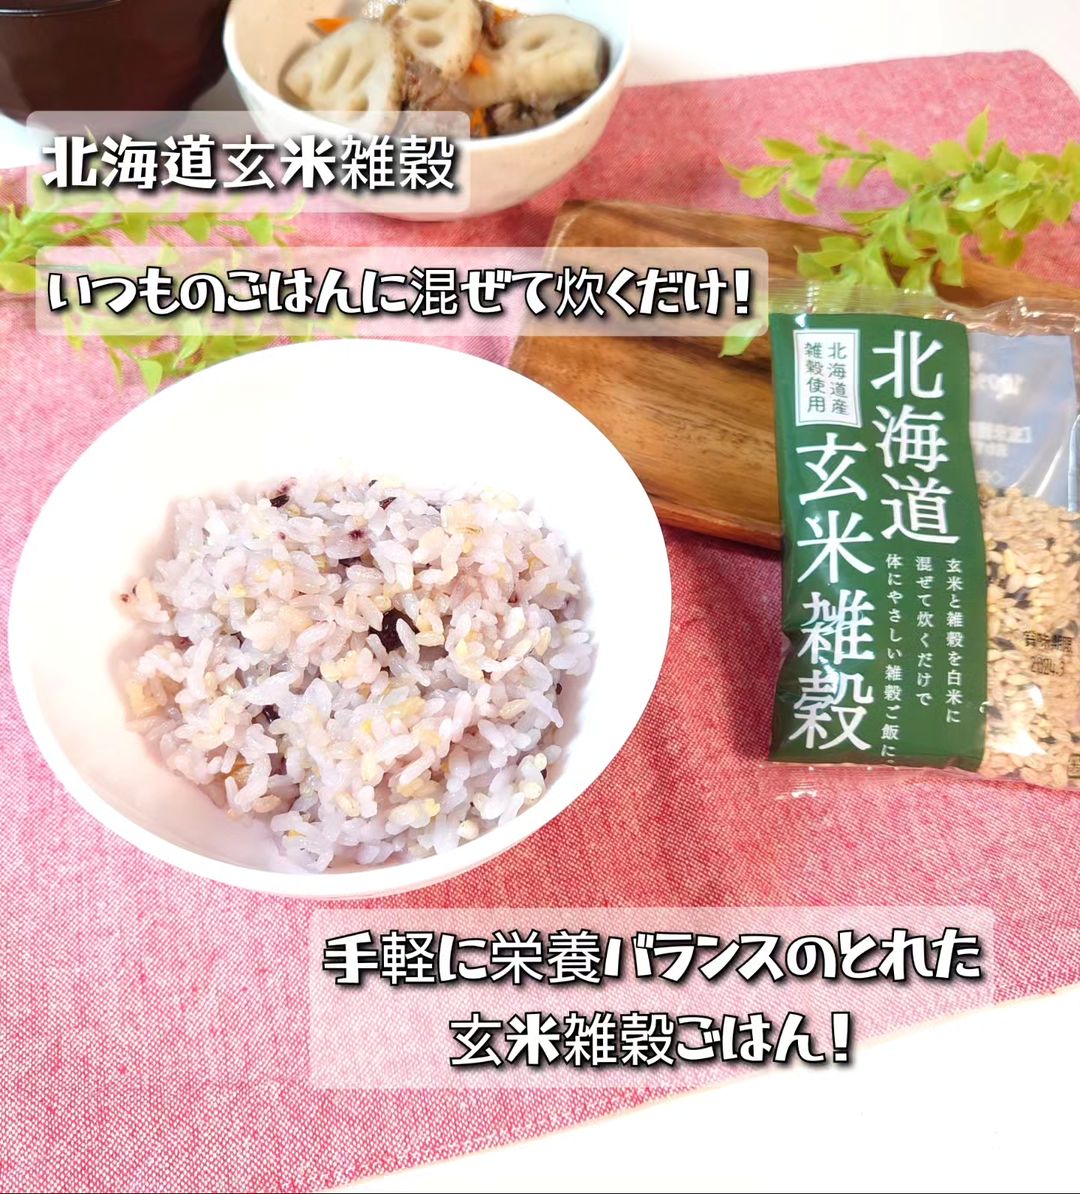 口コミ投稿：北海道産の安心安全な雑穀『北海道玄米雑穀』を食べてみました♪..北海道産の玄米と雑…